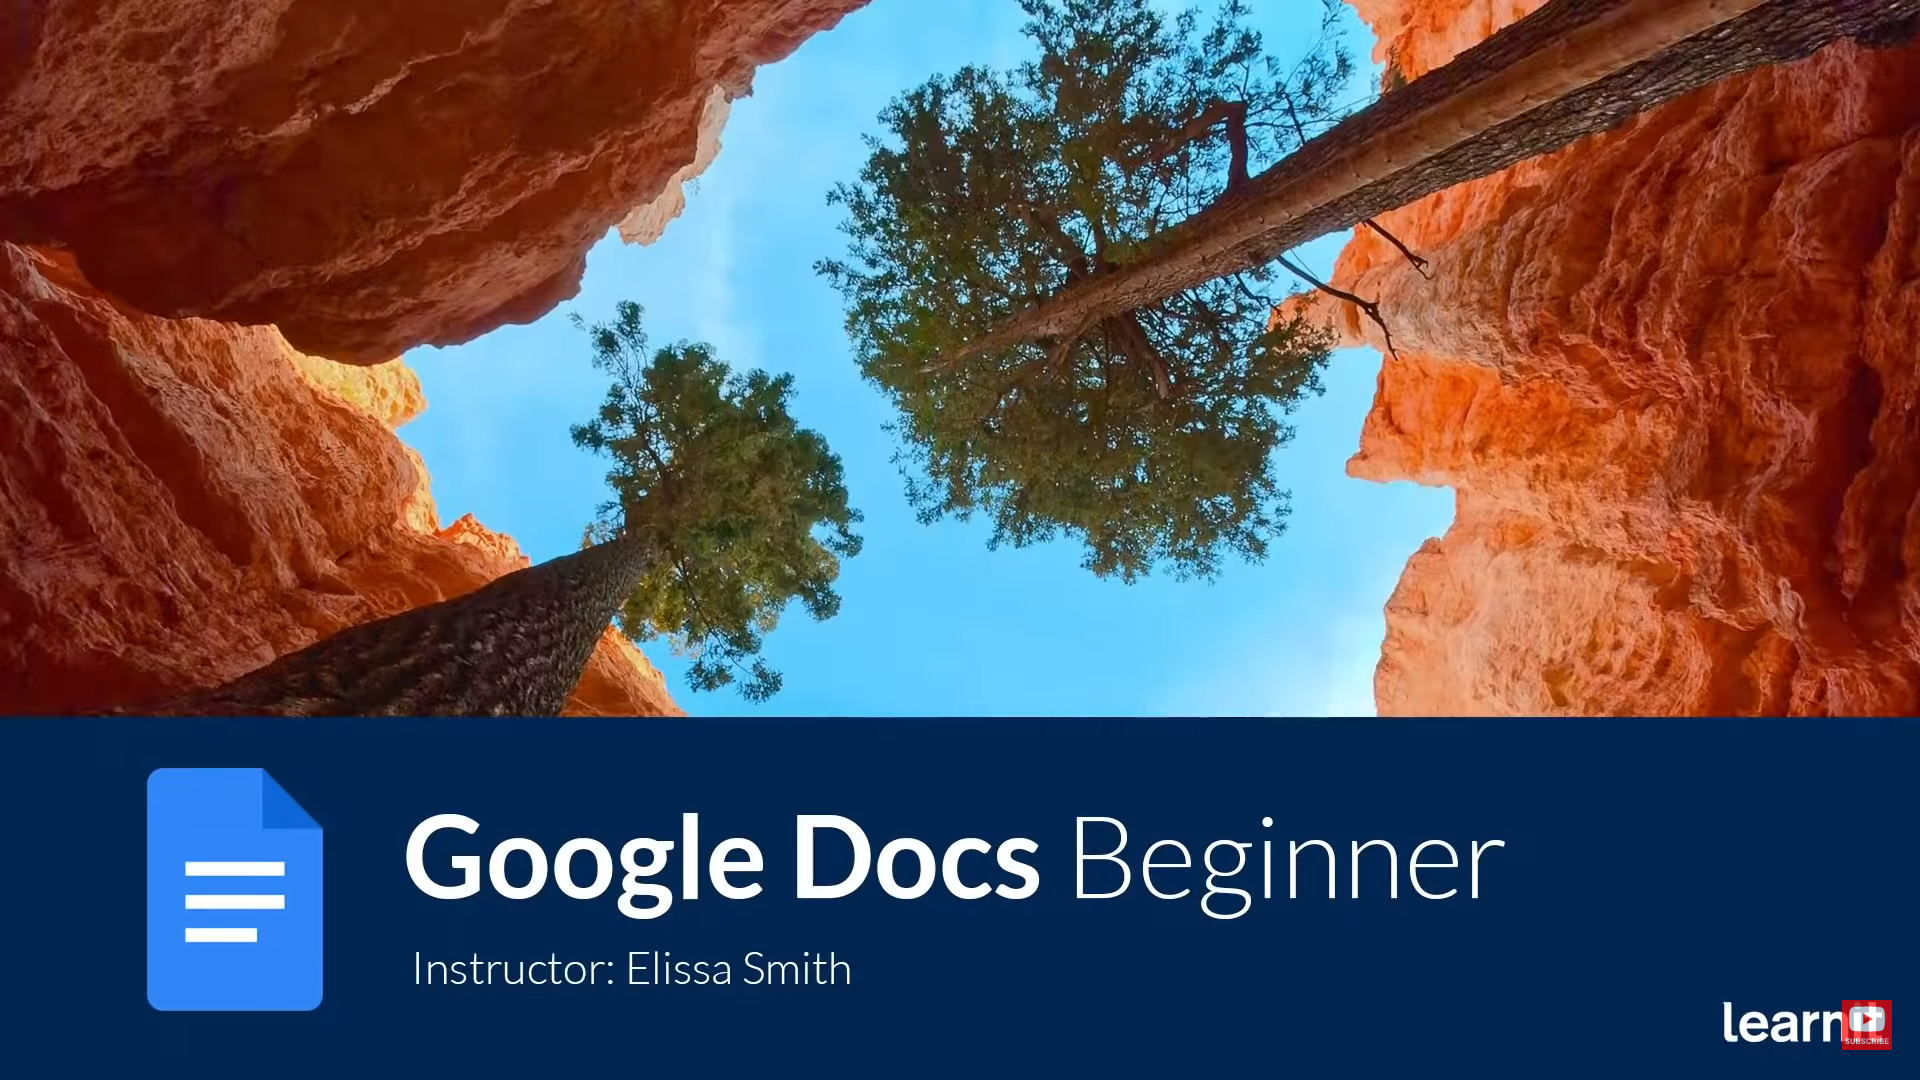 Google Docs Beginner Tutorial